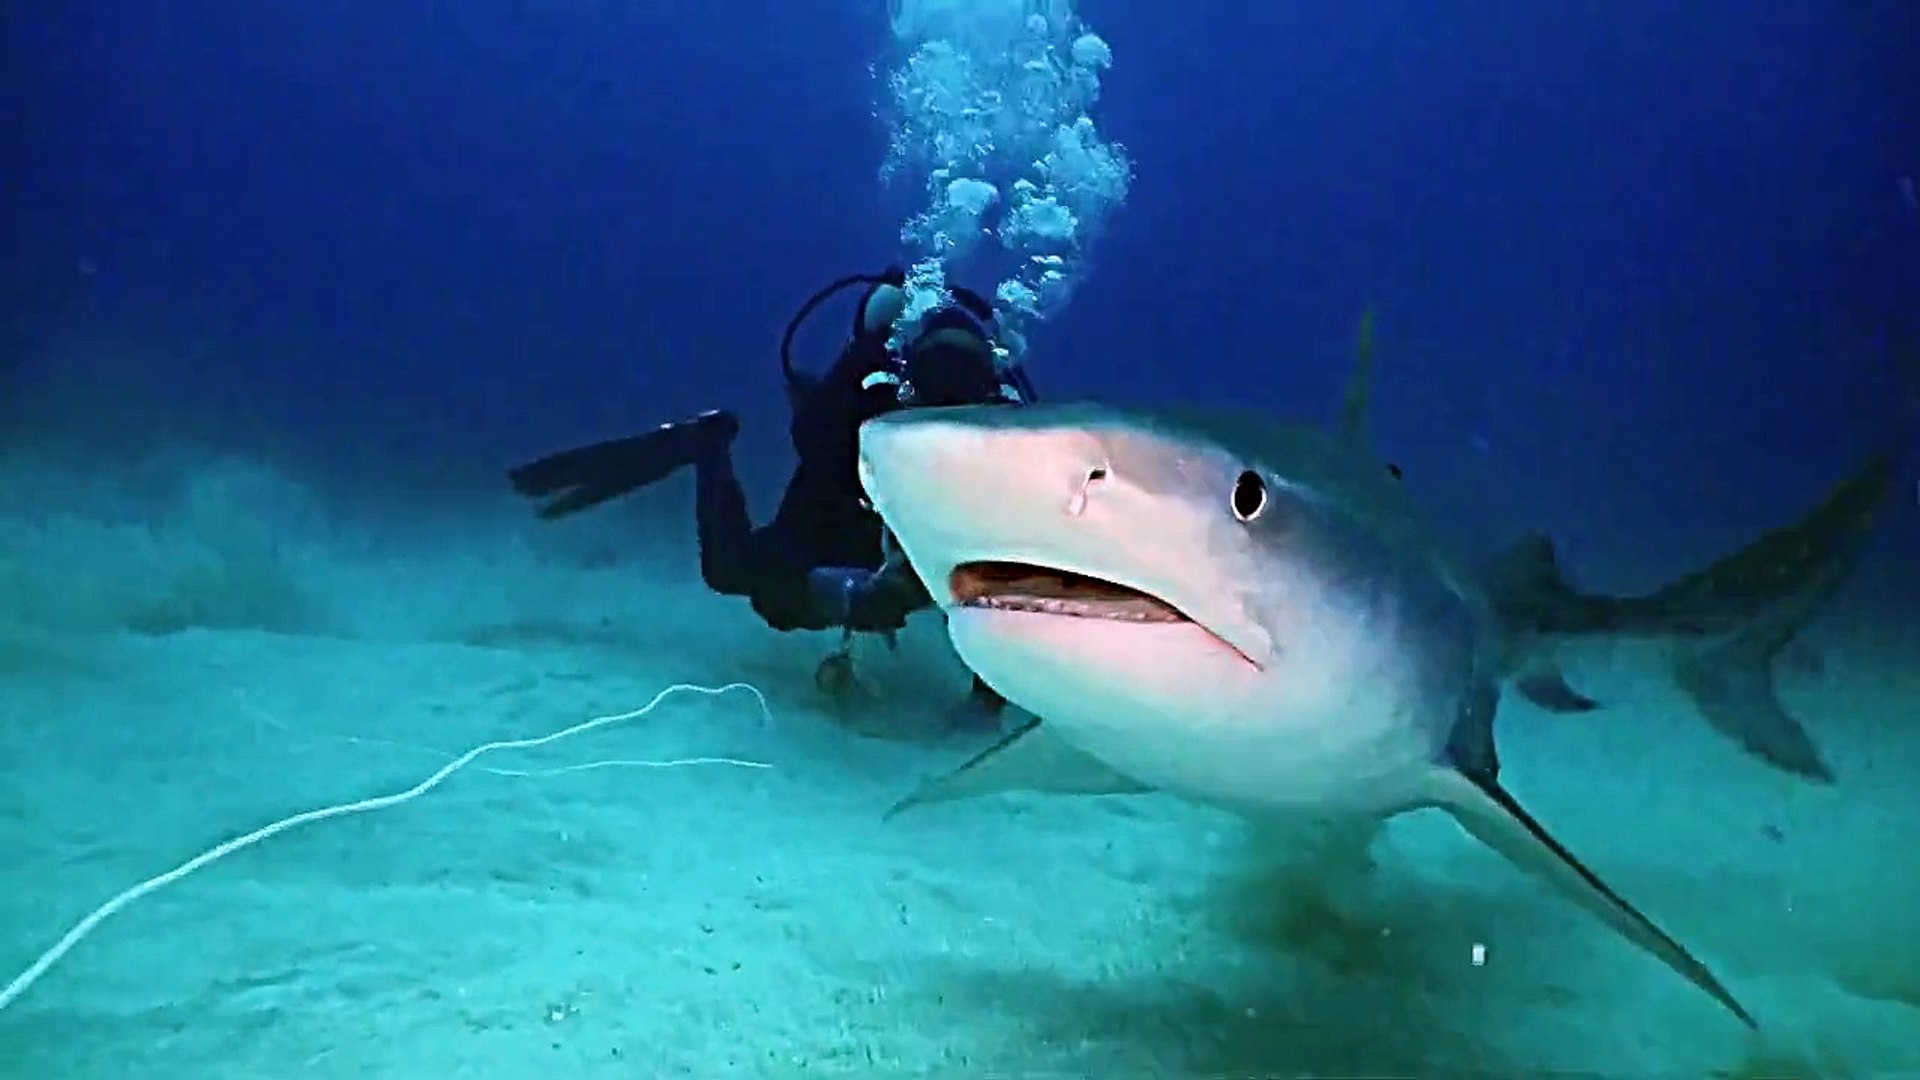 Shark Diving Dangerous Tiger Shark feeding behavior